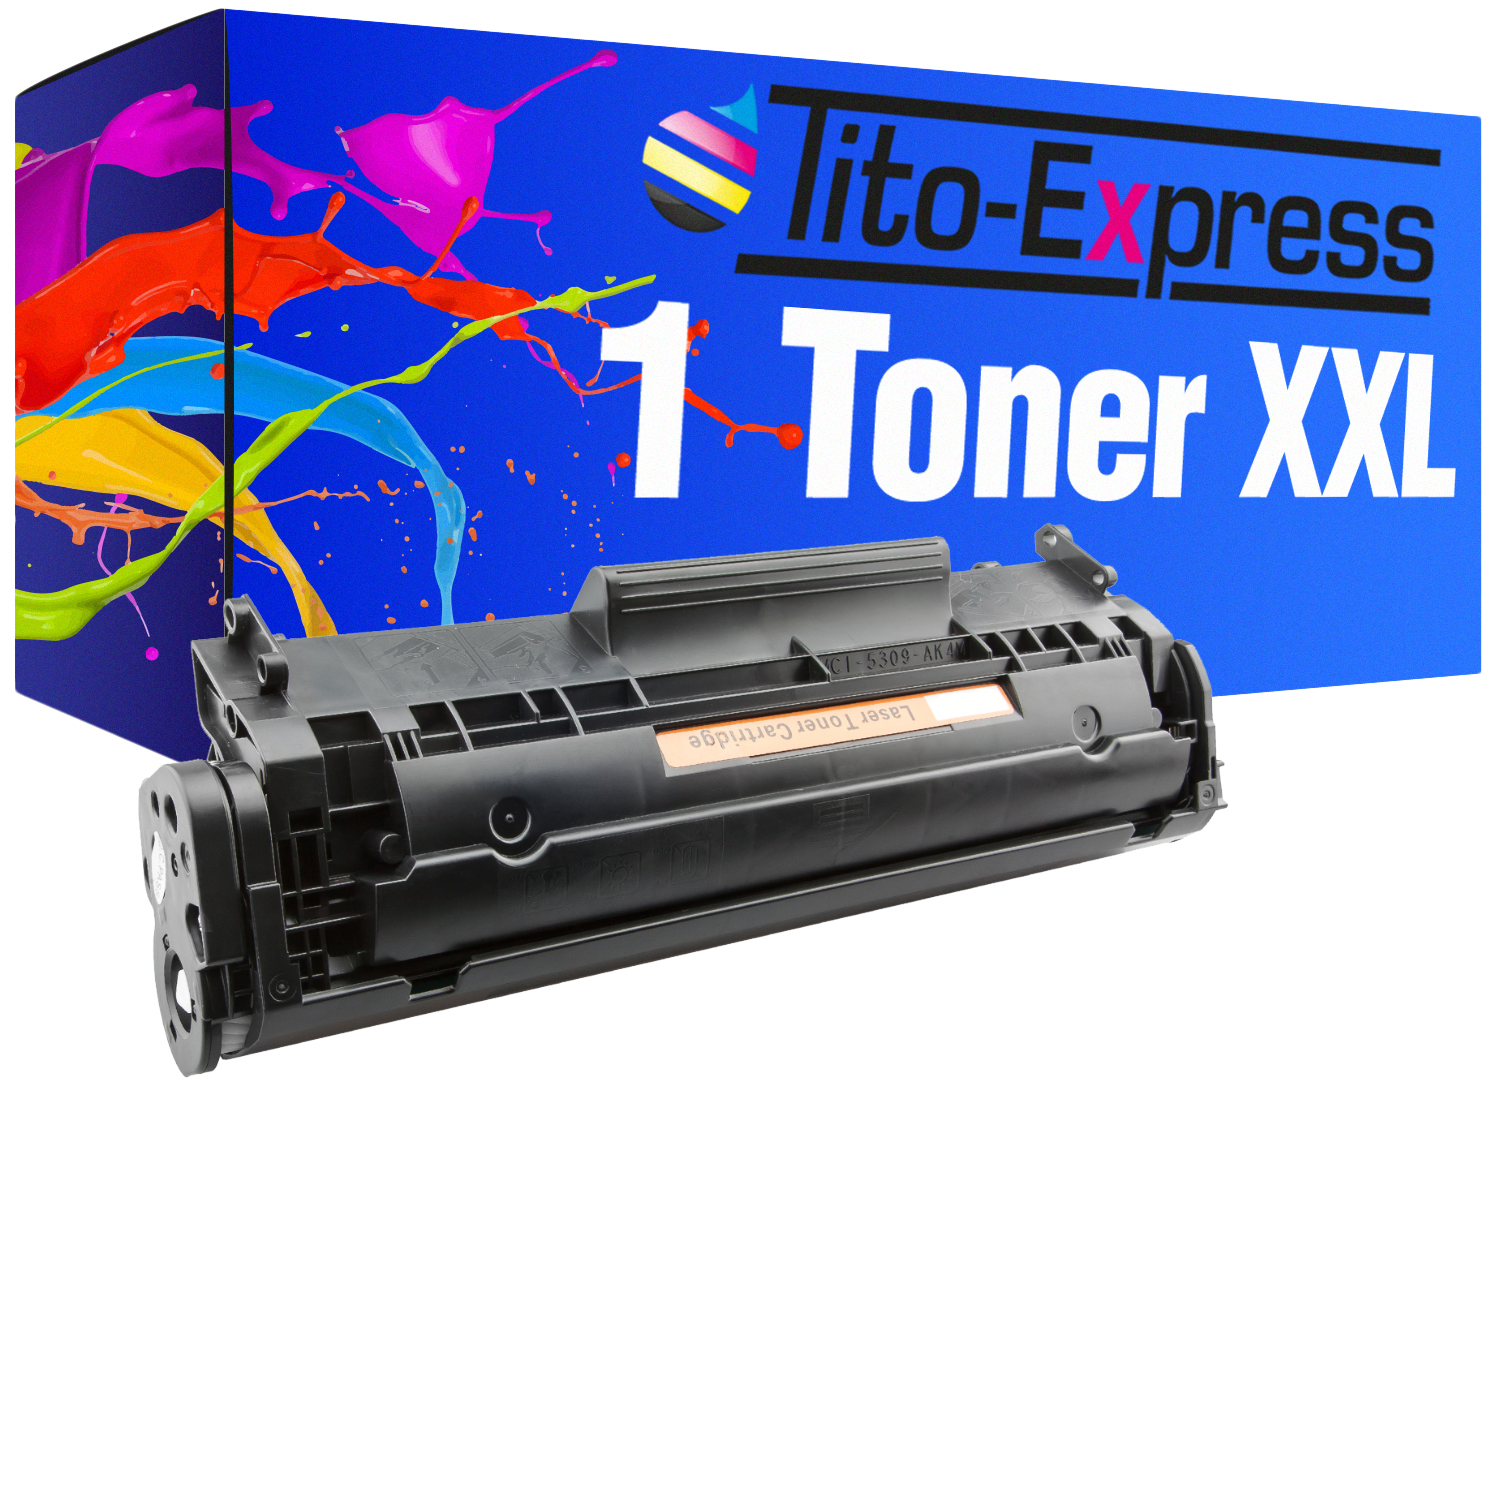 ersetzt Toner black HP PLATINUMSERIE Toner 12A (Q2612A) 1 Q2612A TITO-EXPRESS